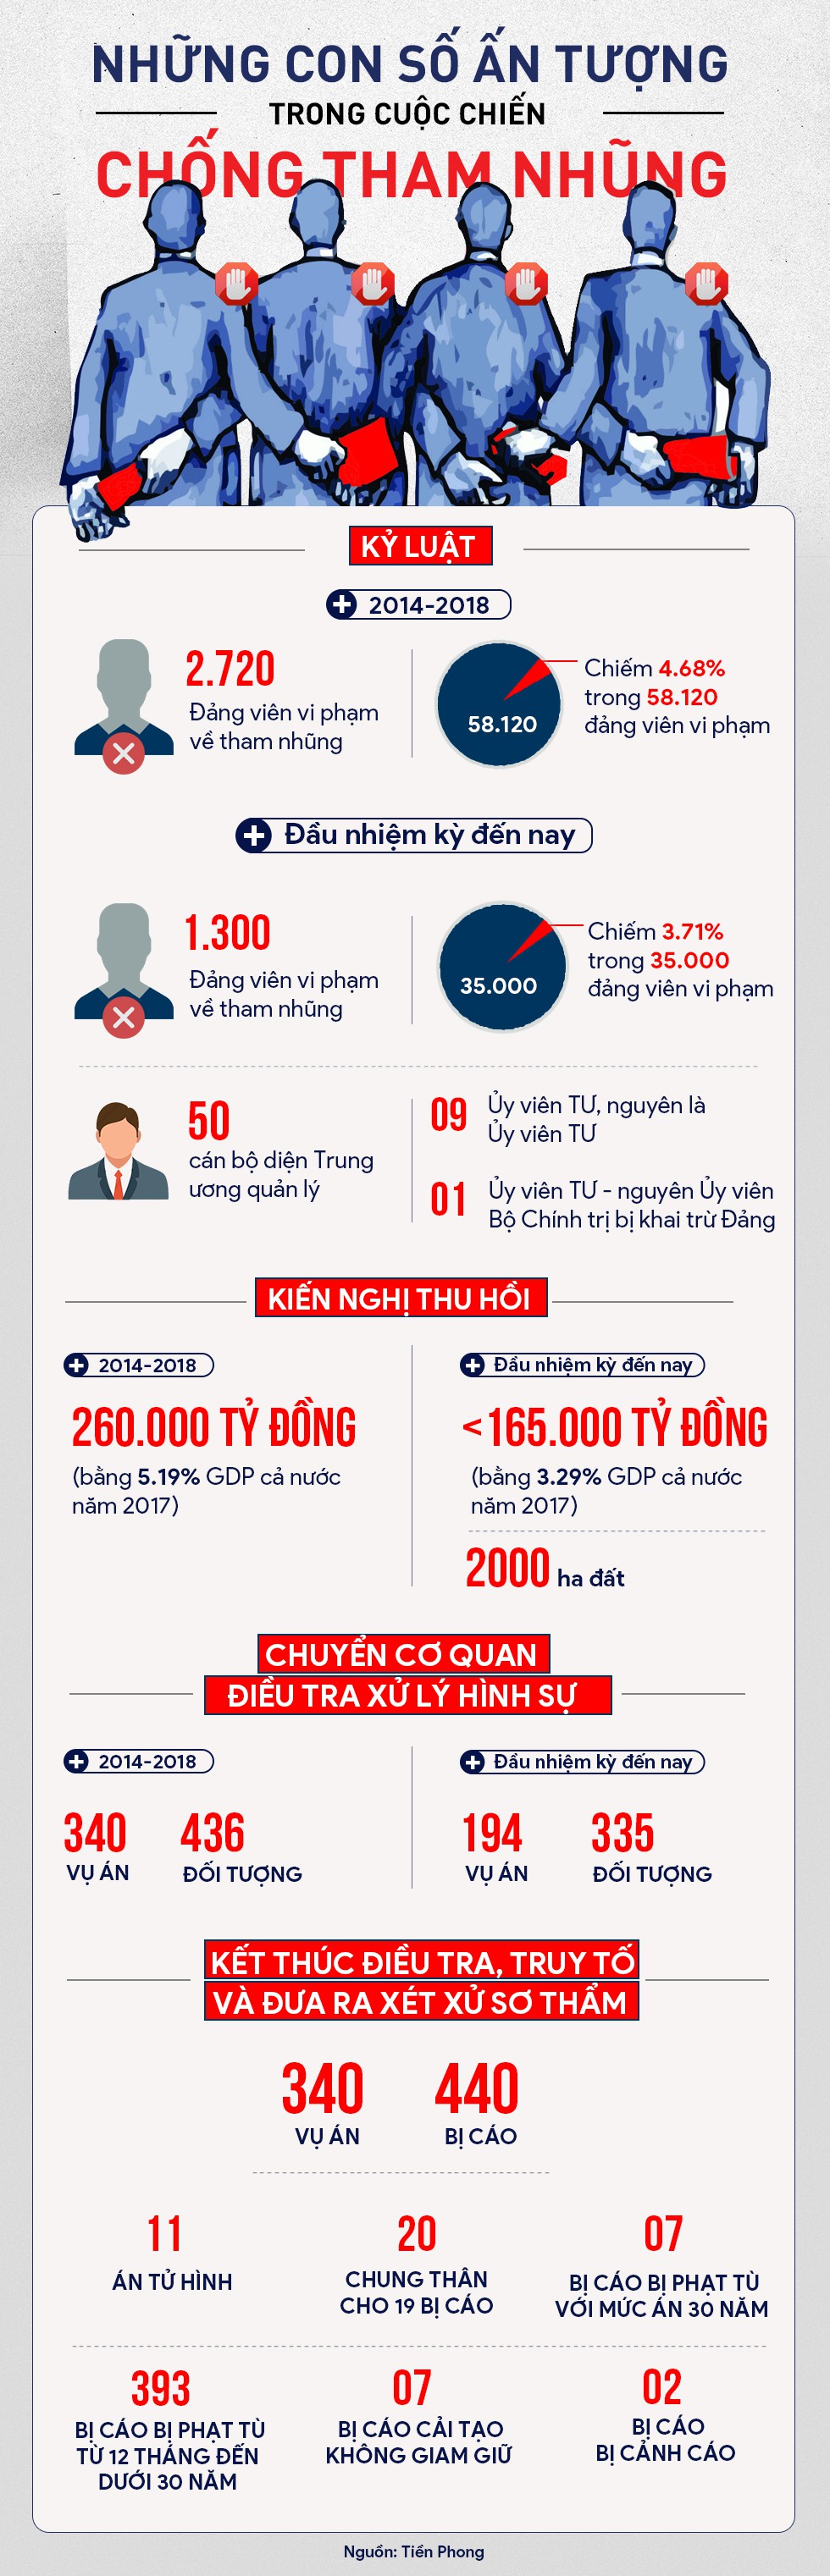 [Infographic] Những con số ấn tượng của cuộc chiến chống tham nhũng - Ảnh 1.